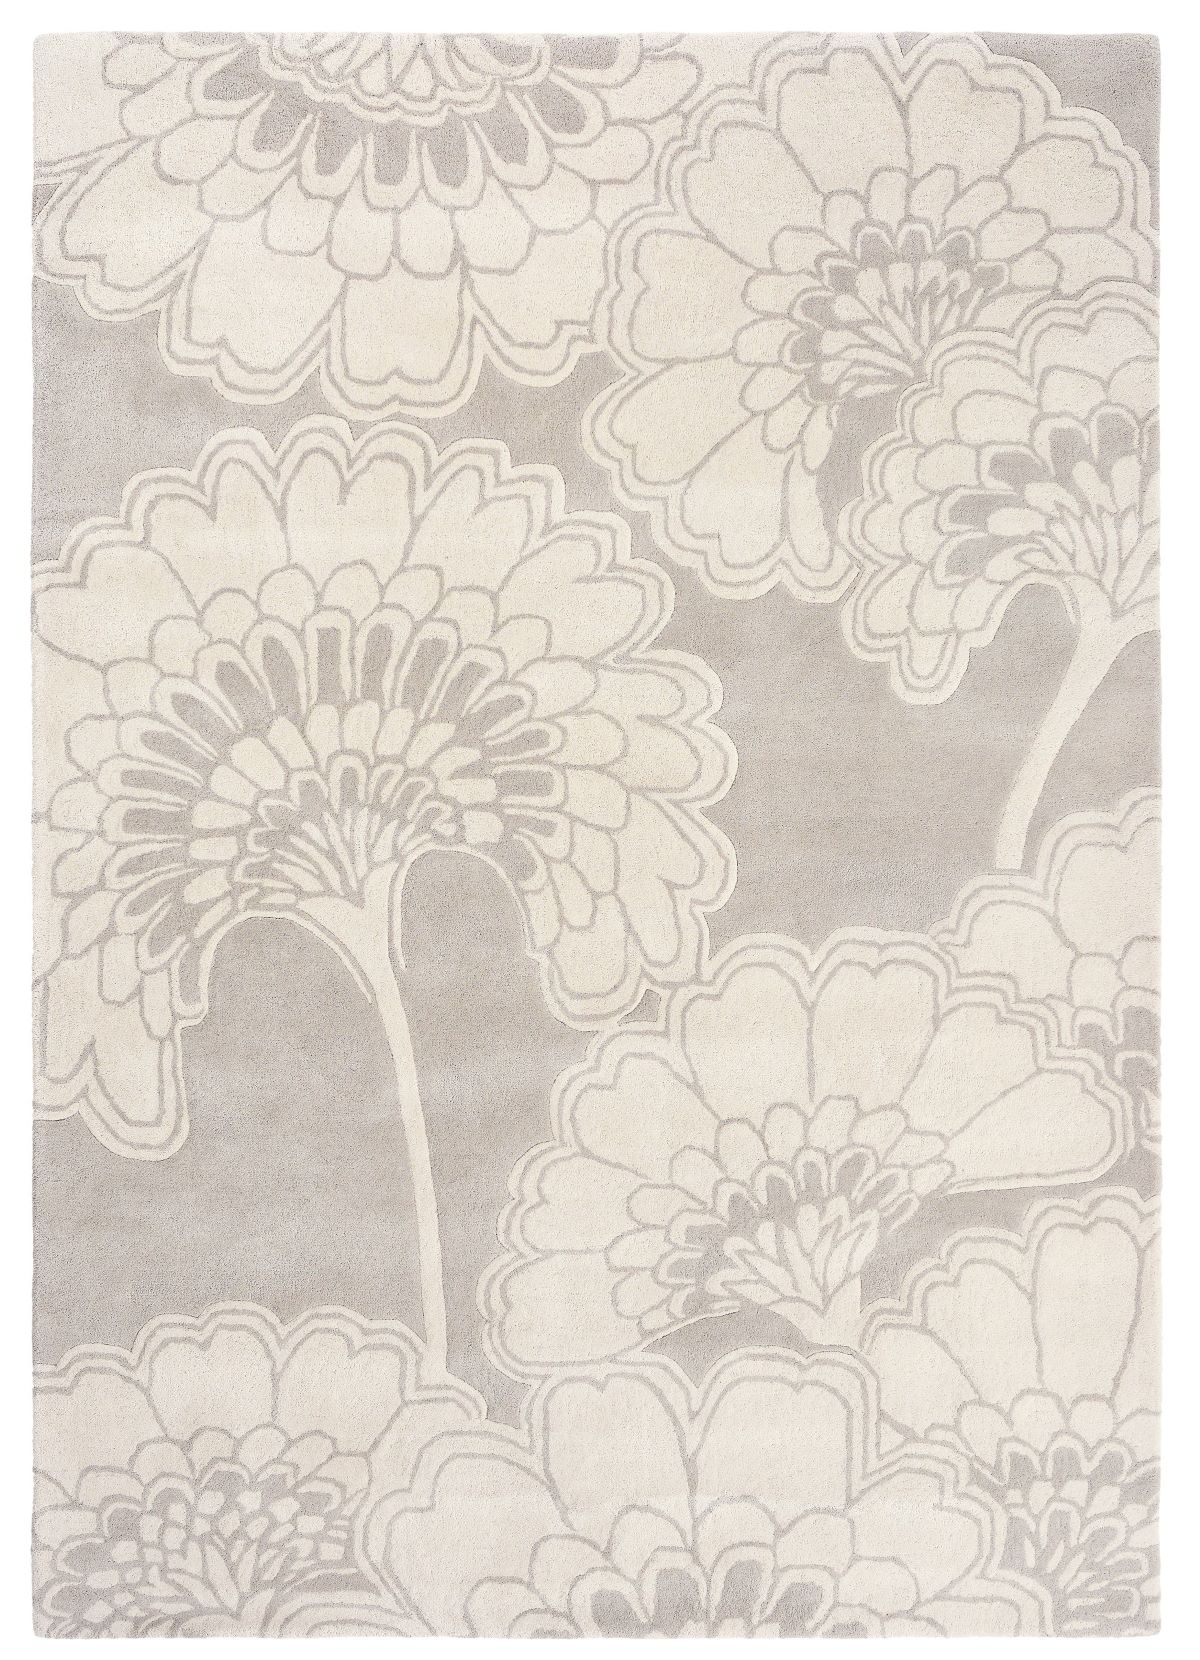 florence-broadhurst-rug-japanese-floral-oyster-039701